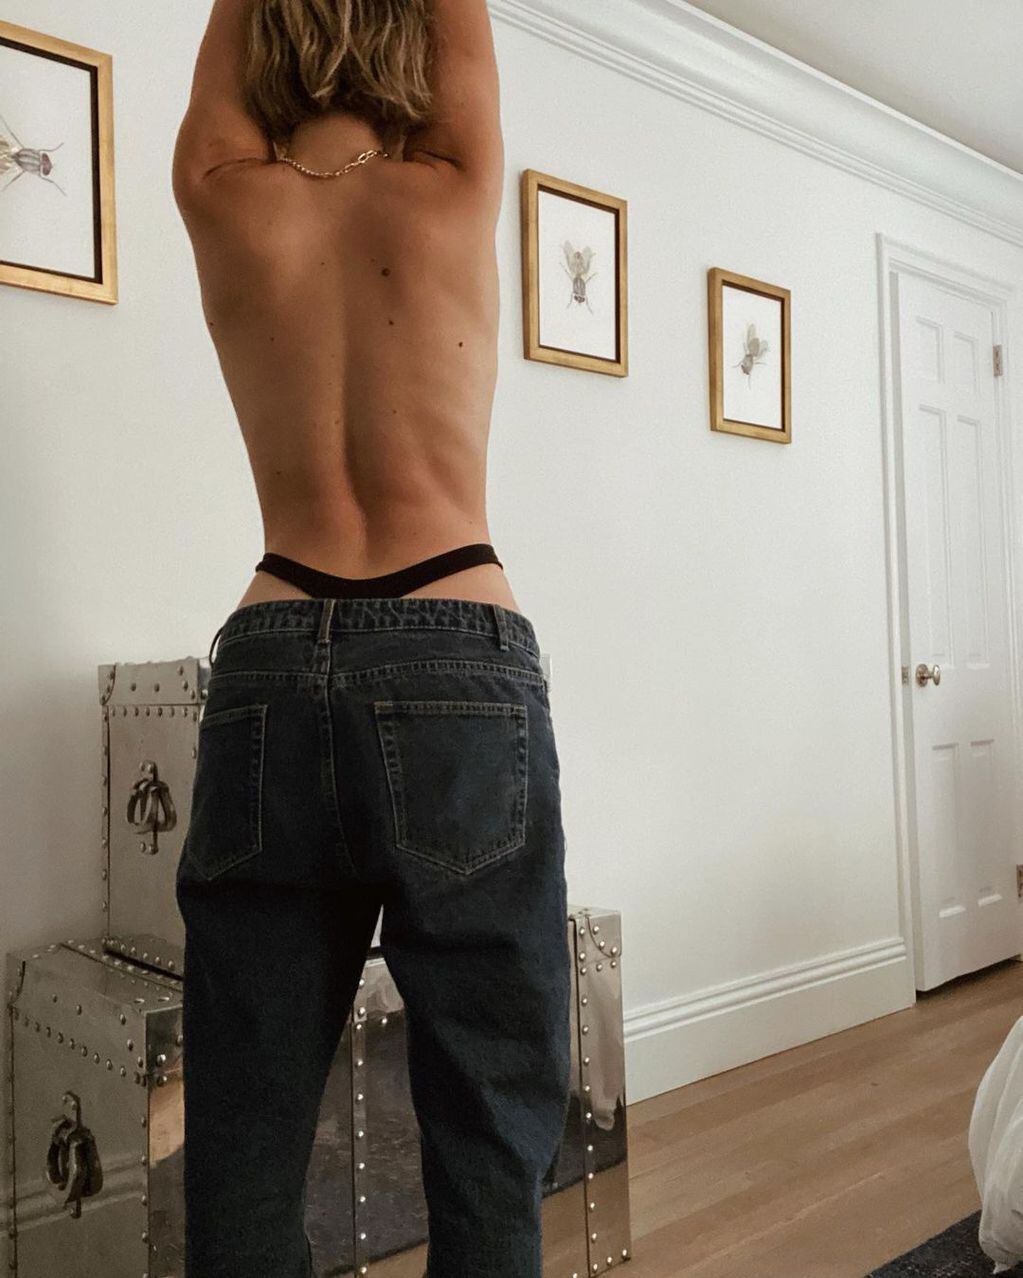 Stefi Roitman mostró “su mundo” con fotos sin corpiño y con la moda de “tanga a la vista” (Foto: Instagram)